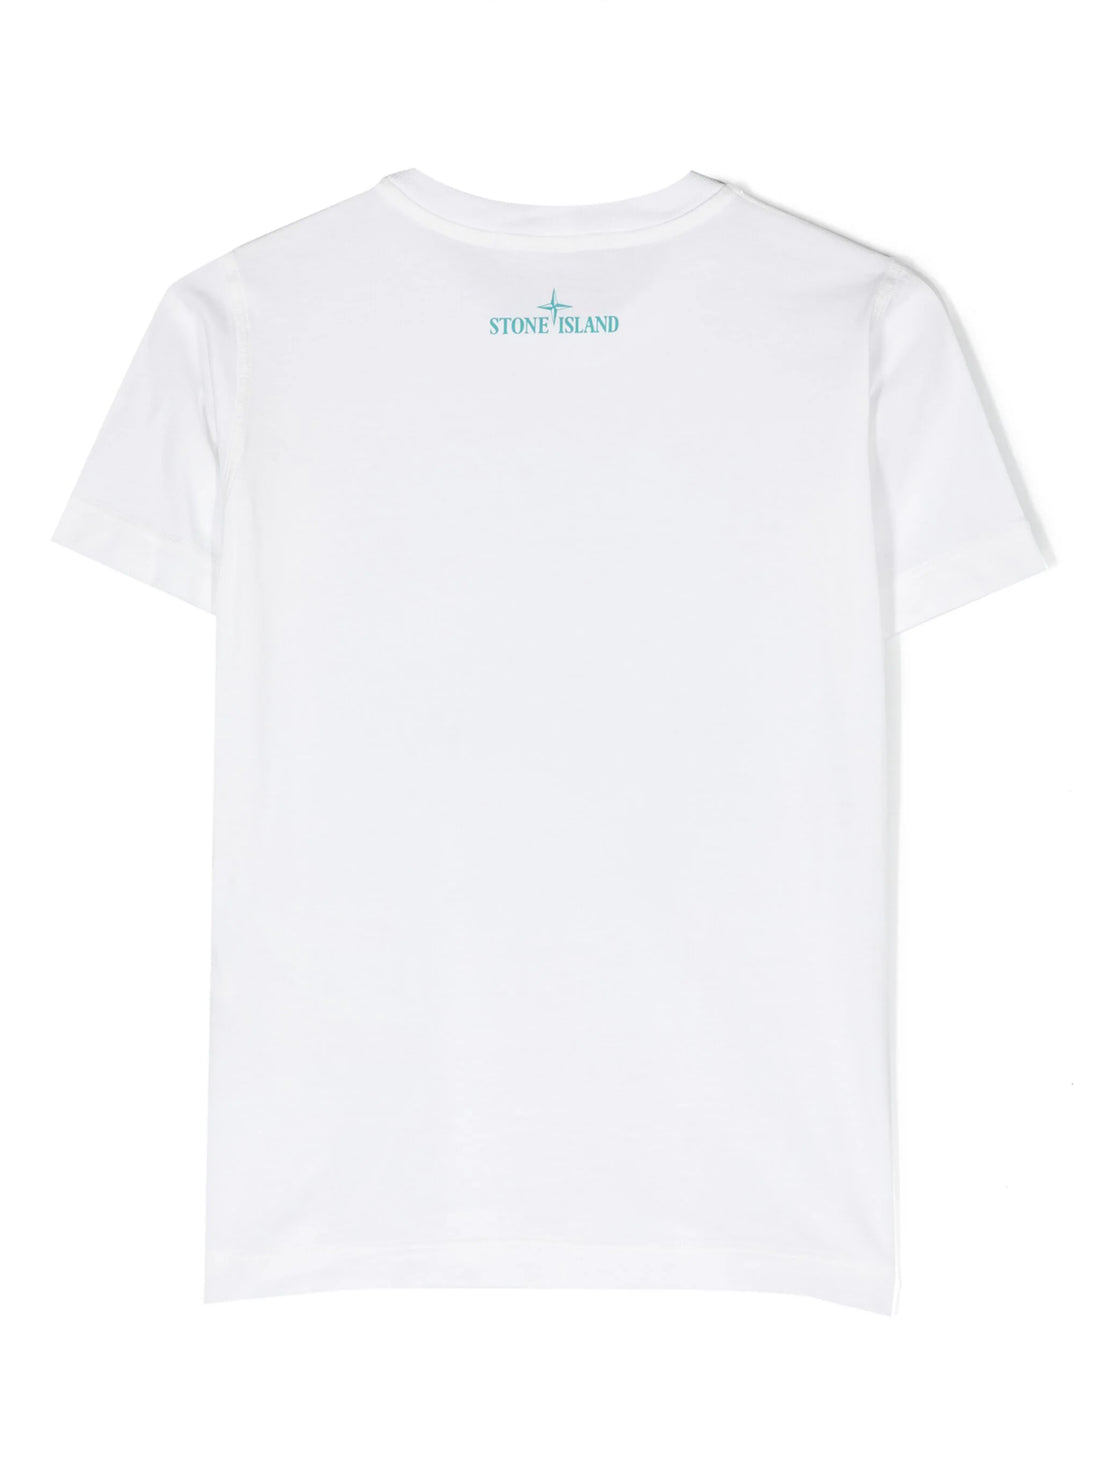 STONE ISLAND KIDS Compass Logo Graphic Print Cotton T-Shirt White - MAISONDEFASHION.COM